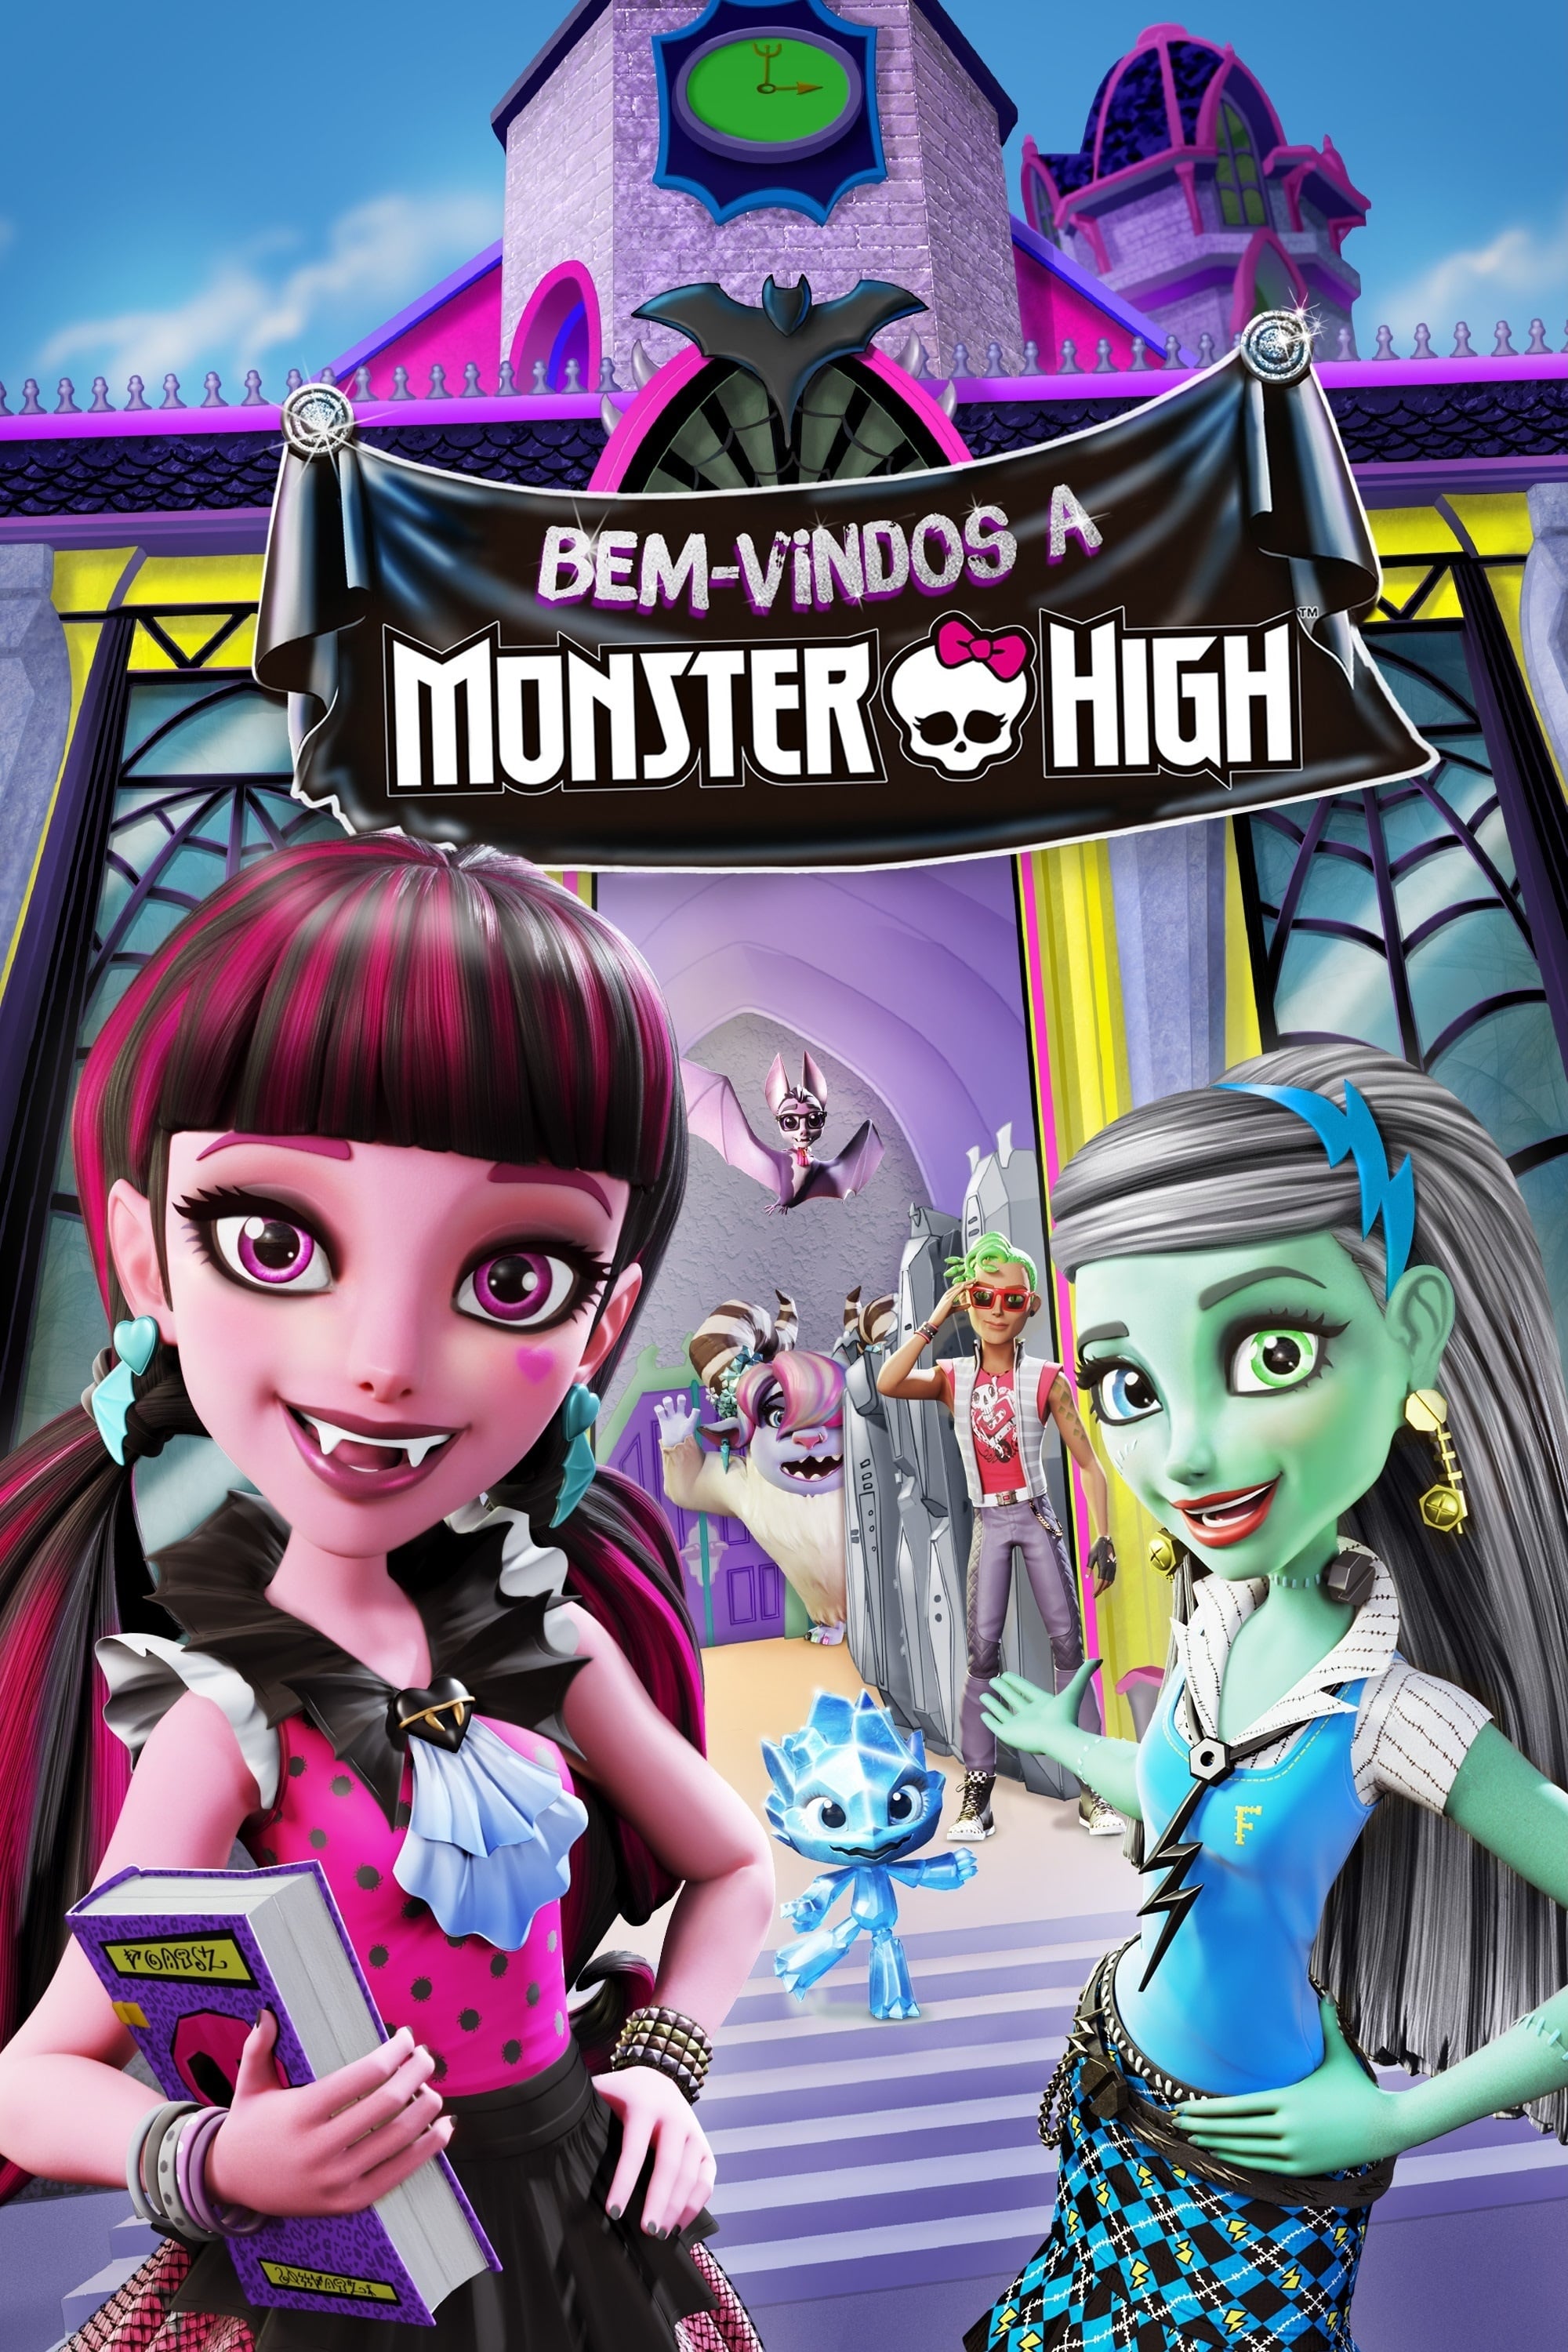 Bem-vindos a Monster High Premiere de 10 minutos